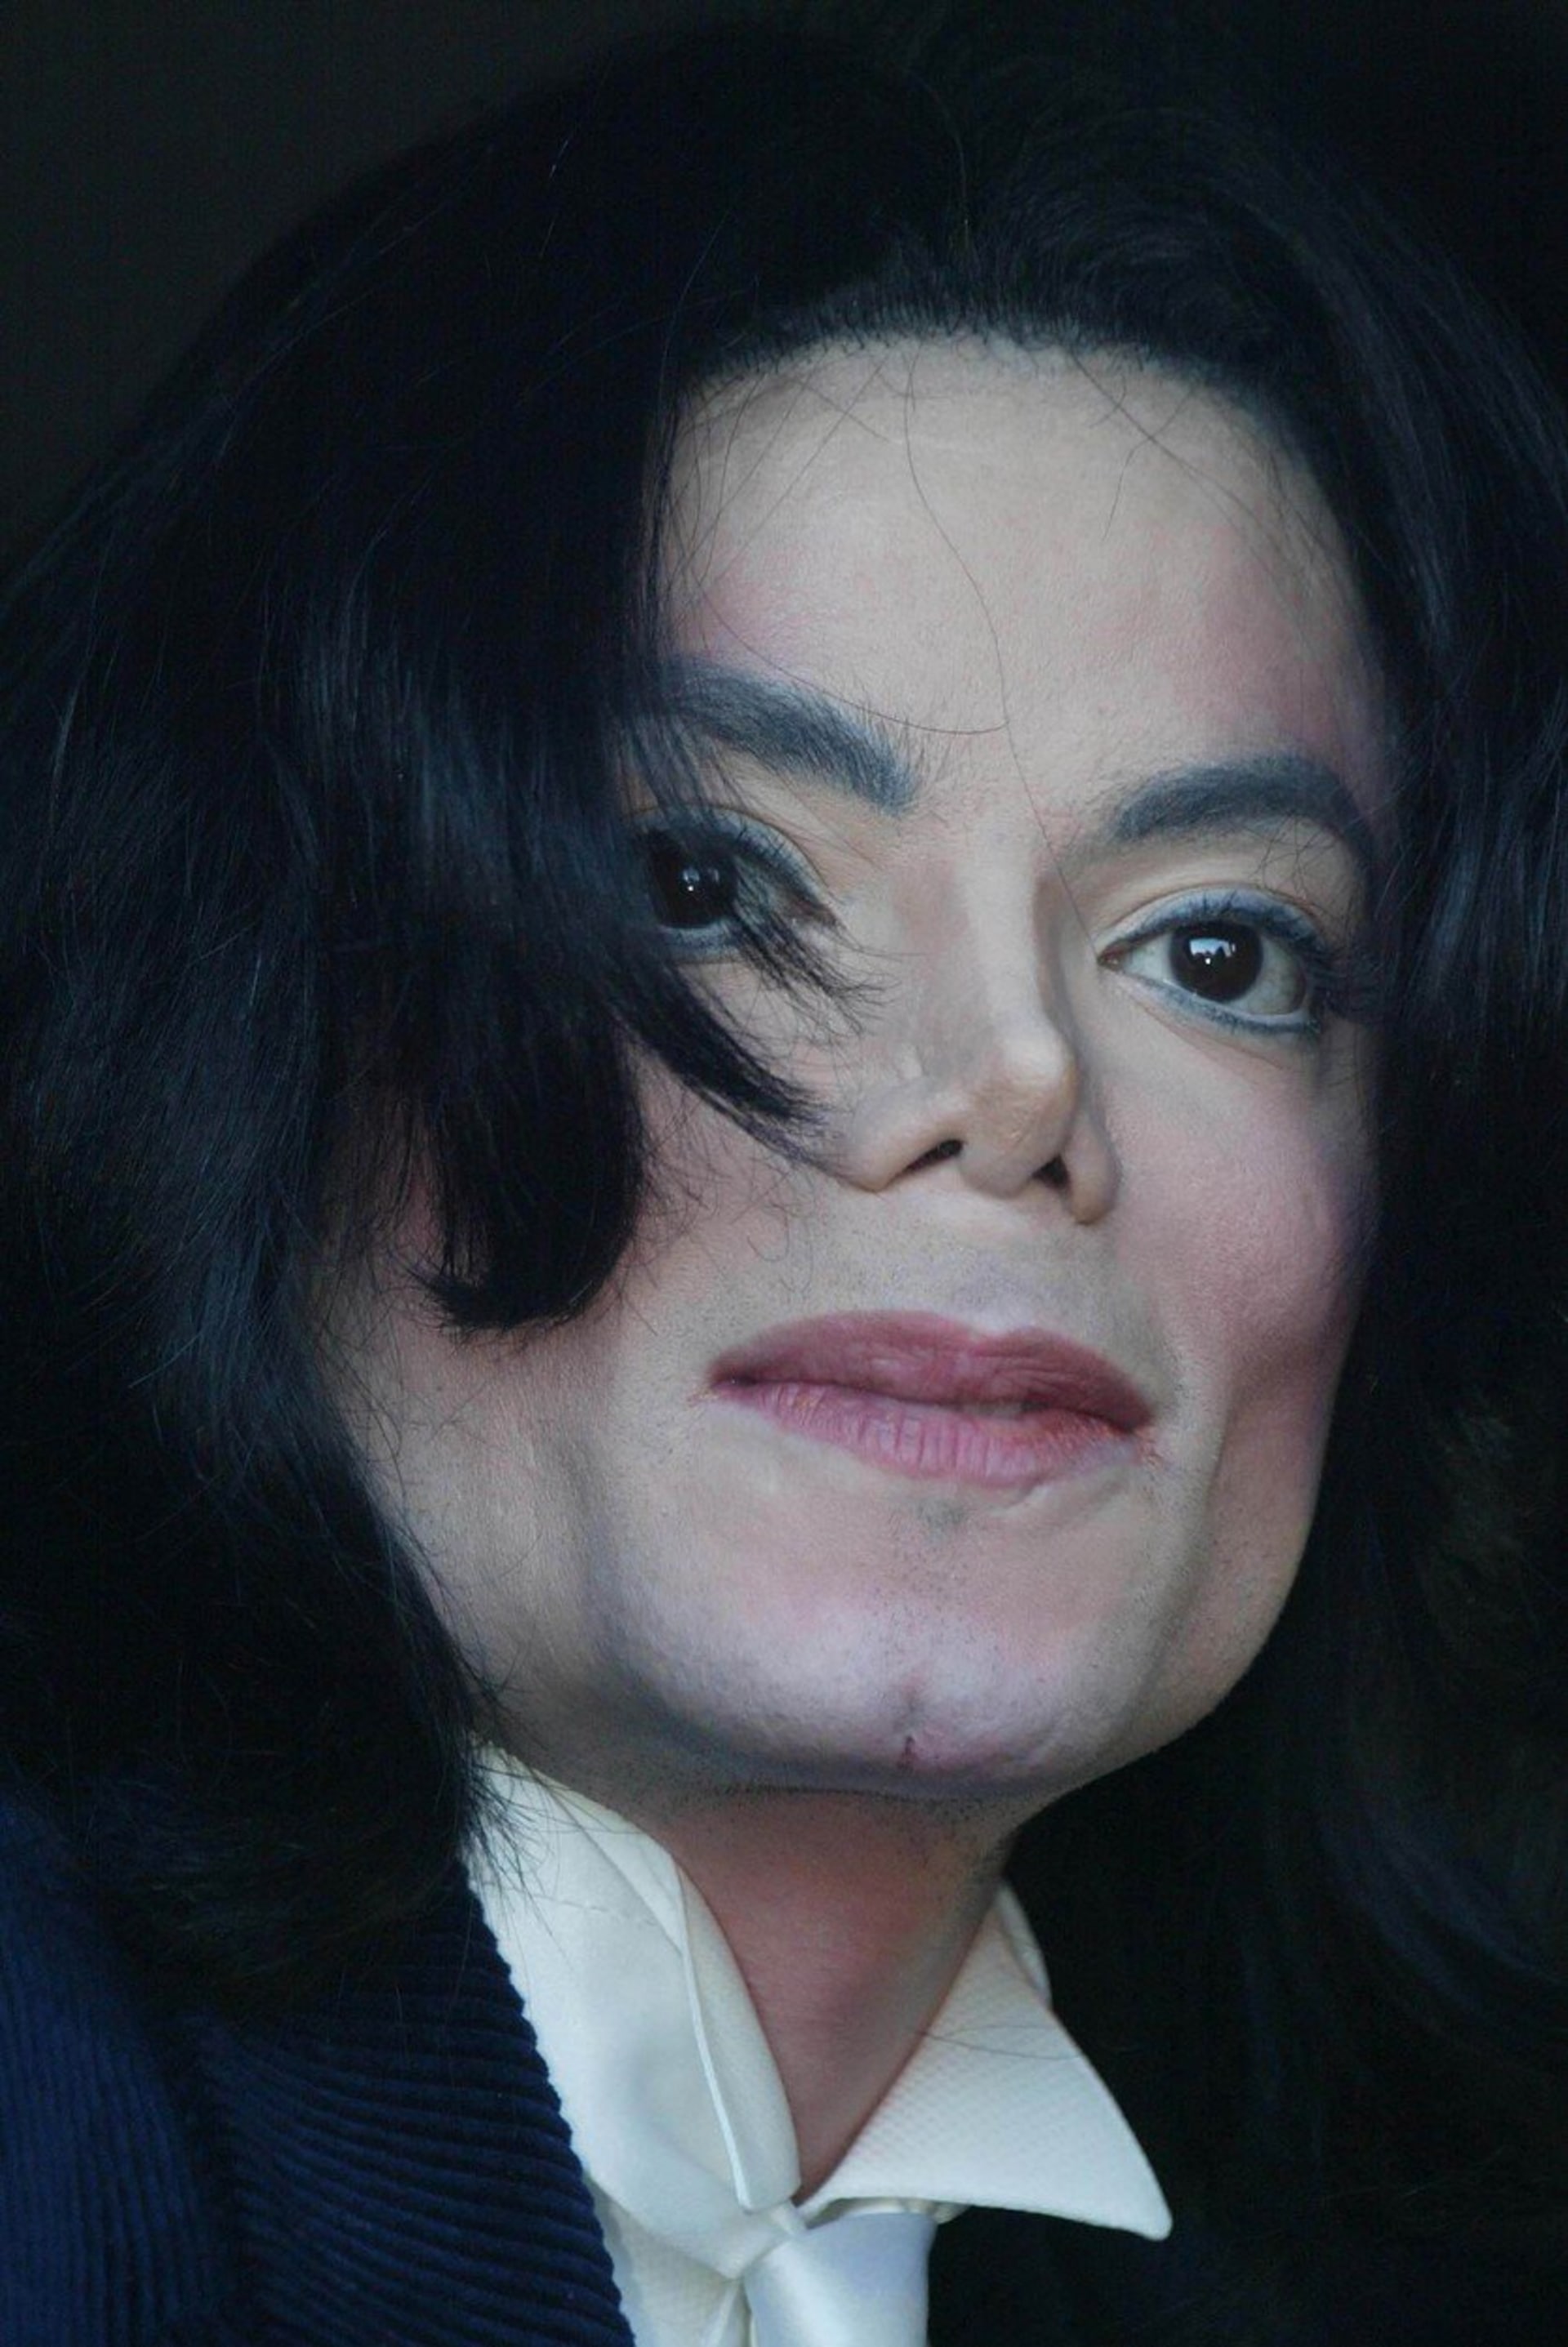 Co všechno dělal Michael Jackson s dětmi? 2